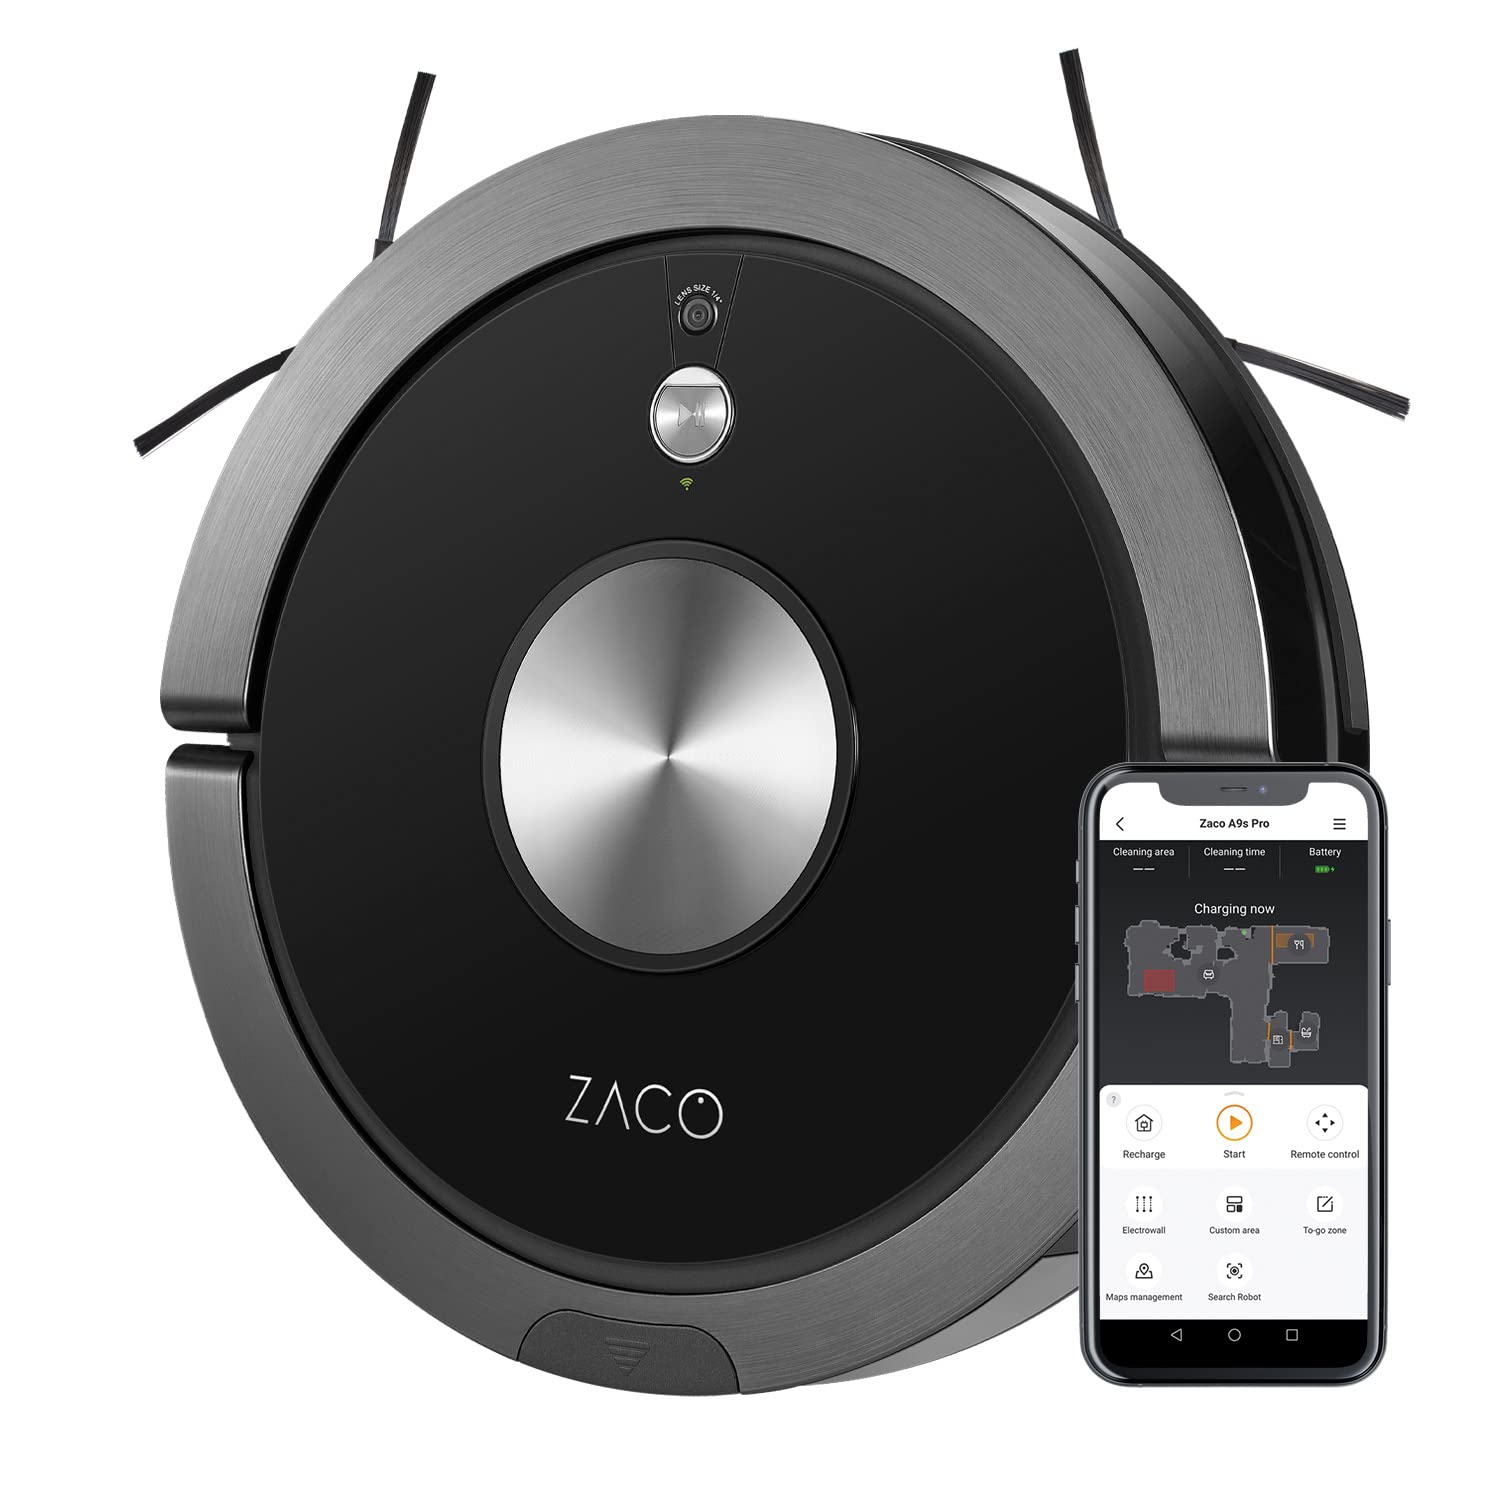 ZACO A9sPro Saugroboter mit Wischfunktion, App & Alexa, 7,6 cm flach, Staubsauger Roboter mit Raumkarte & Mapping, bis 2h Laufzeit, leiser Roboterstaubsauger für Teppich, Tierhaare & Parkett, schwarz…